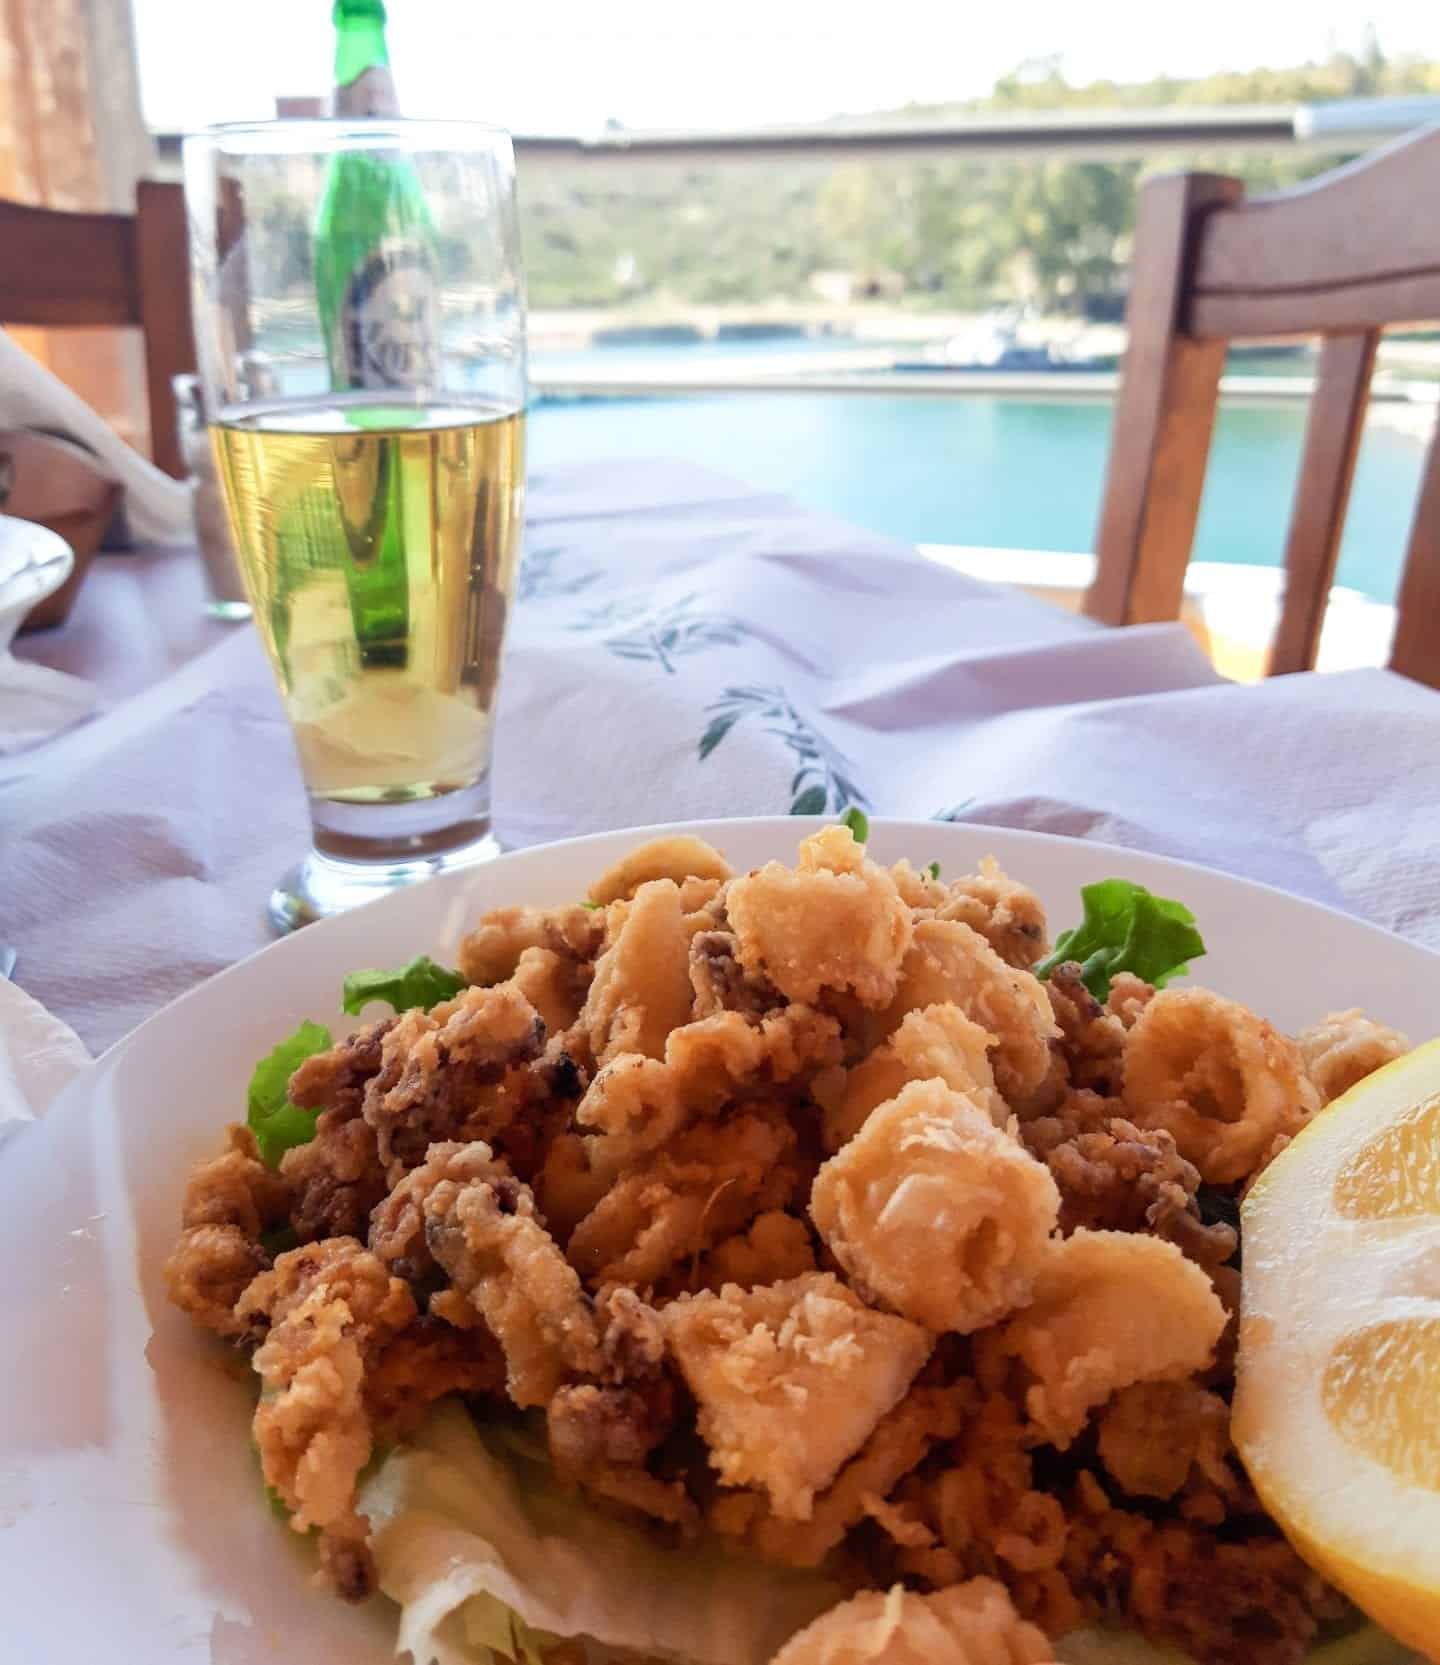 Explore la famosa comida albanesa, lugar de calamares fritos con rodaja de limón junto a un vaso de cerveza sobre un mantel blanco